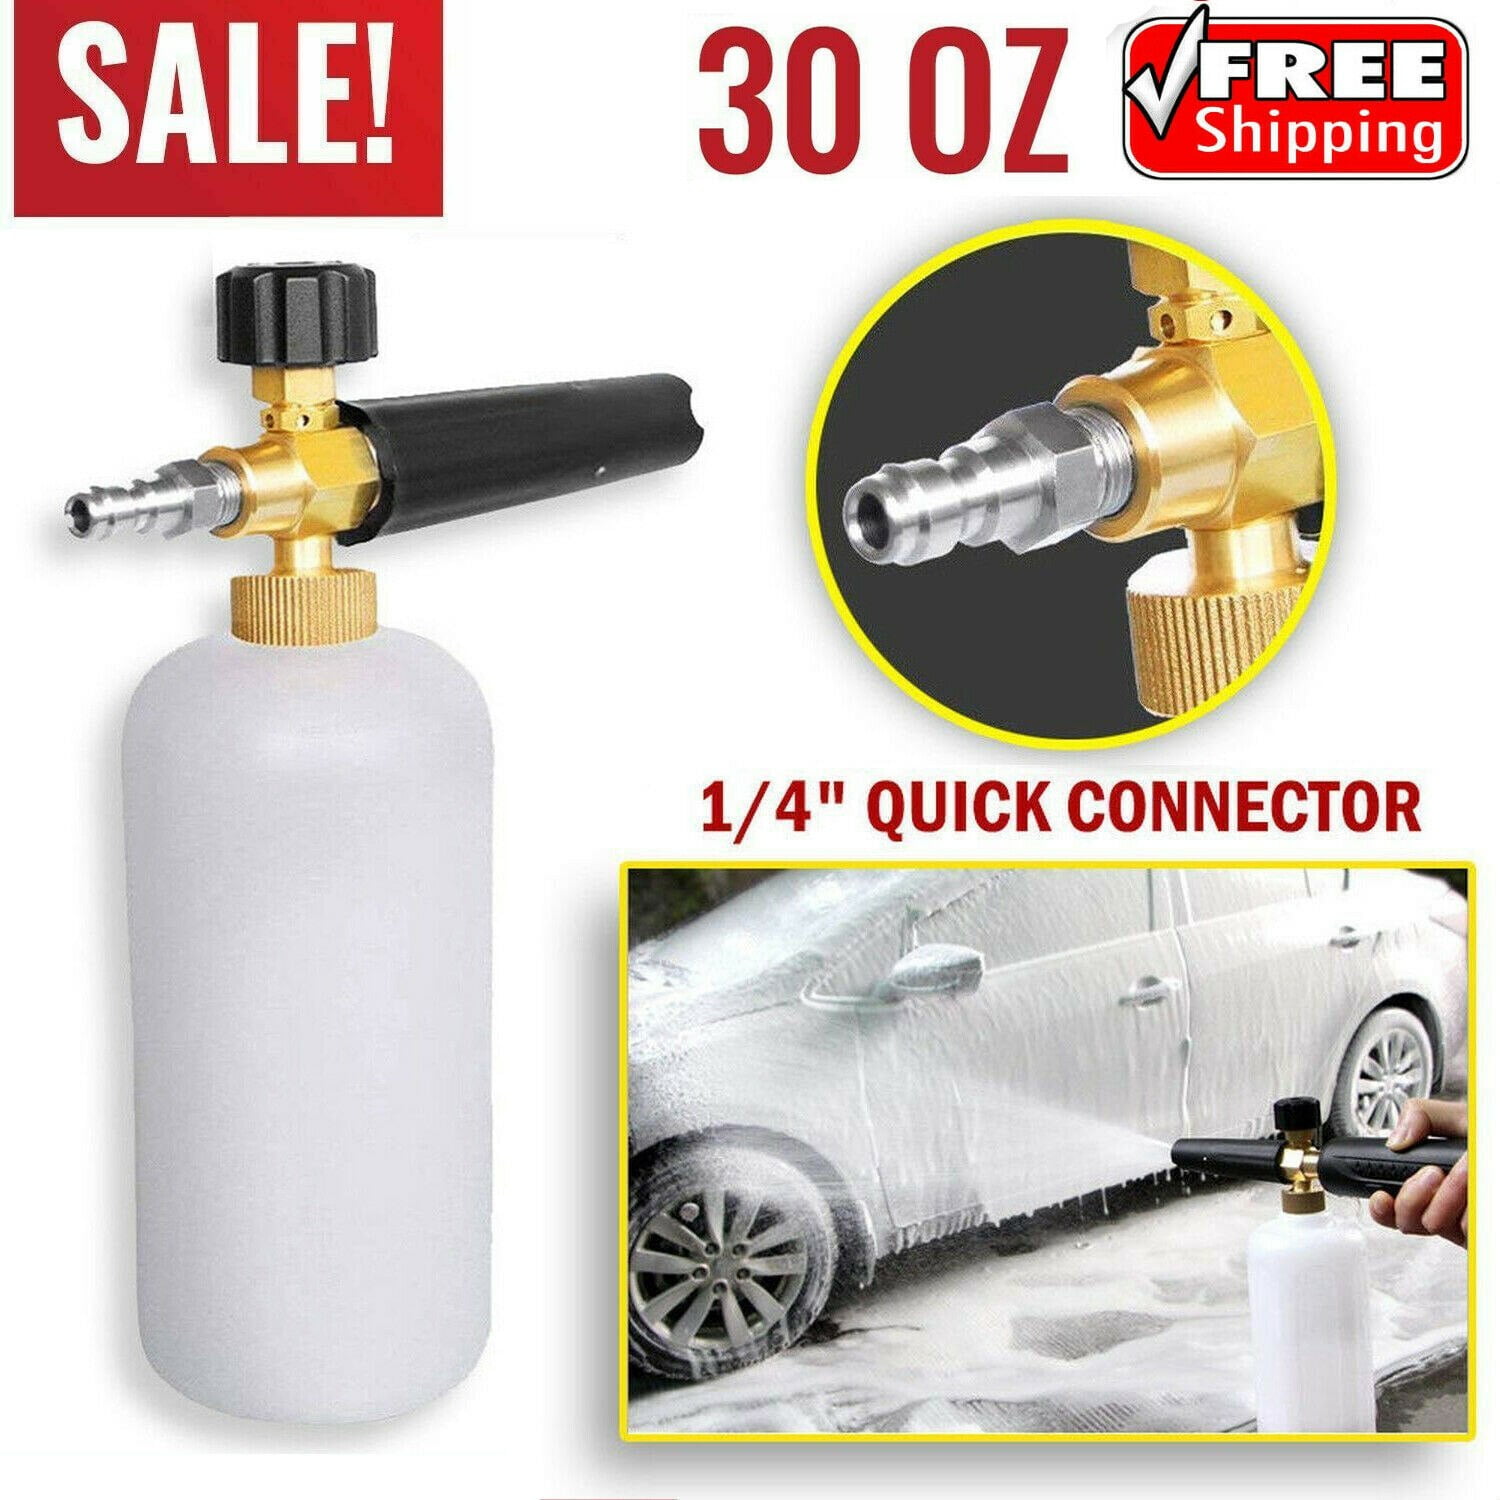 Snow Foam Lance Spray Nozzle Bottle Fits Karcher K series Pressure Washer Brass 